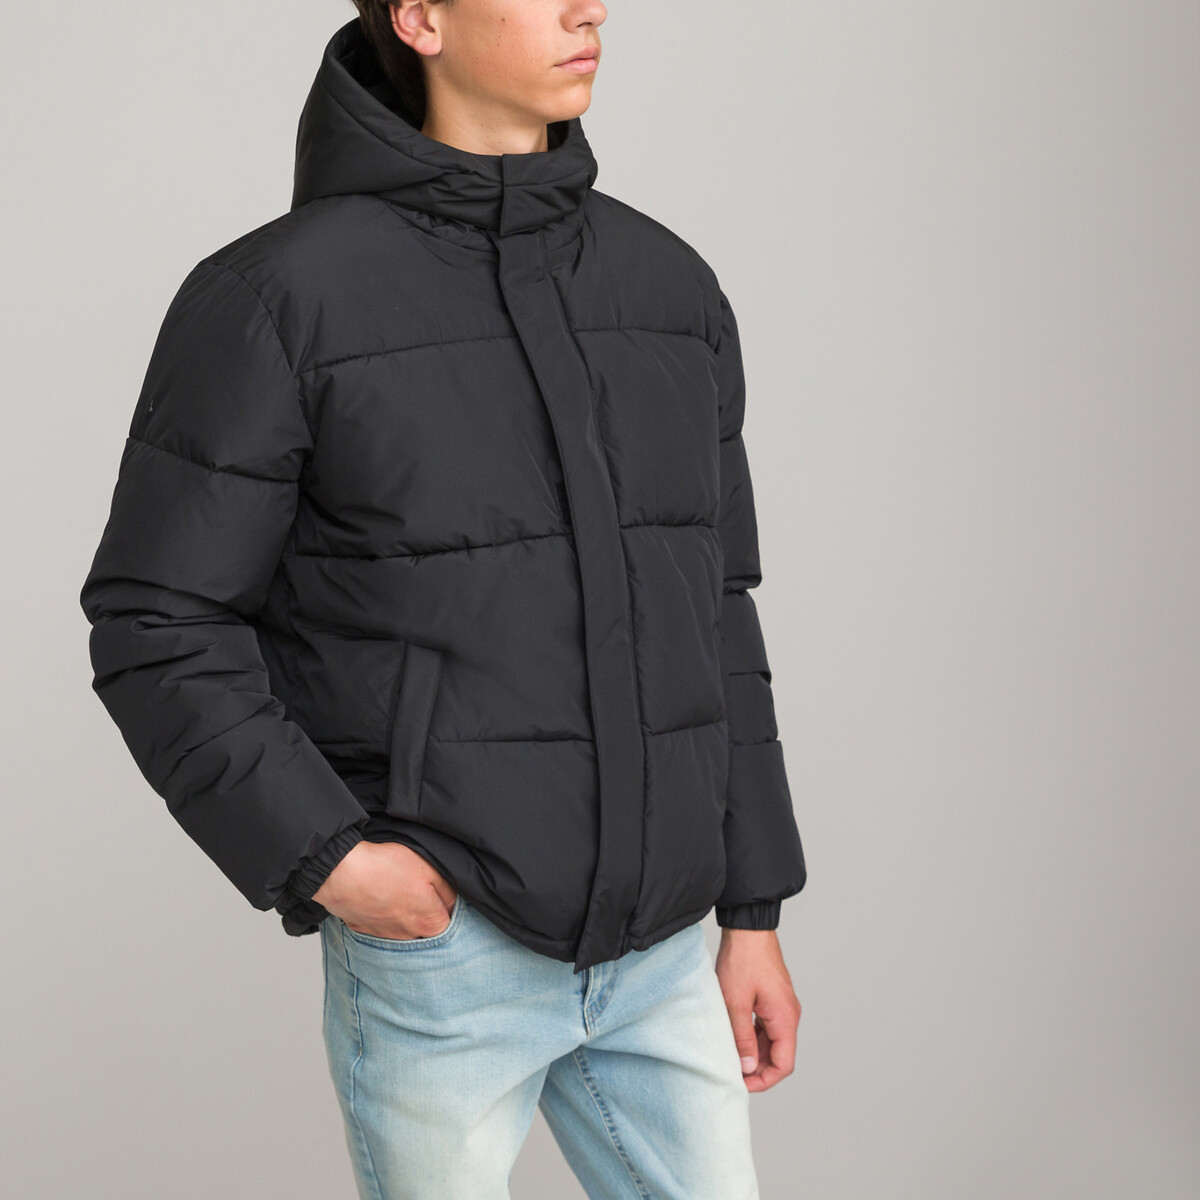 Куртка стеганая утепленная с капюшоном XS черный куртка стеганая утепленная с капюшоном 16 лет 162 см черный